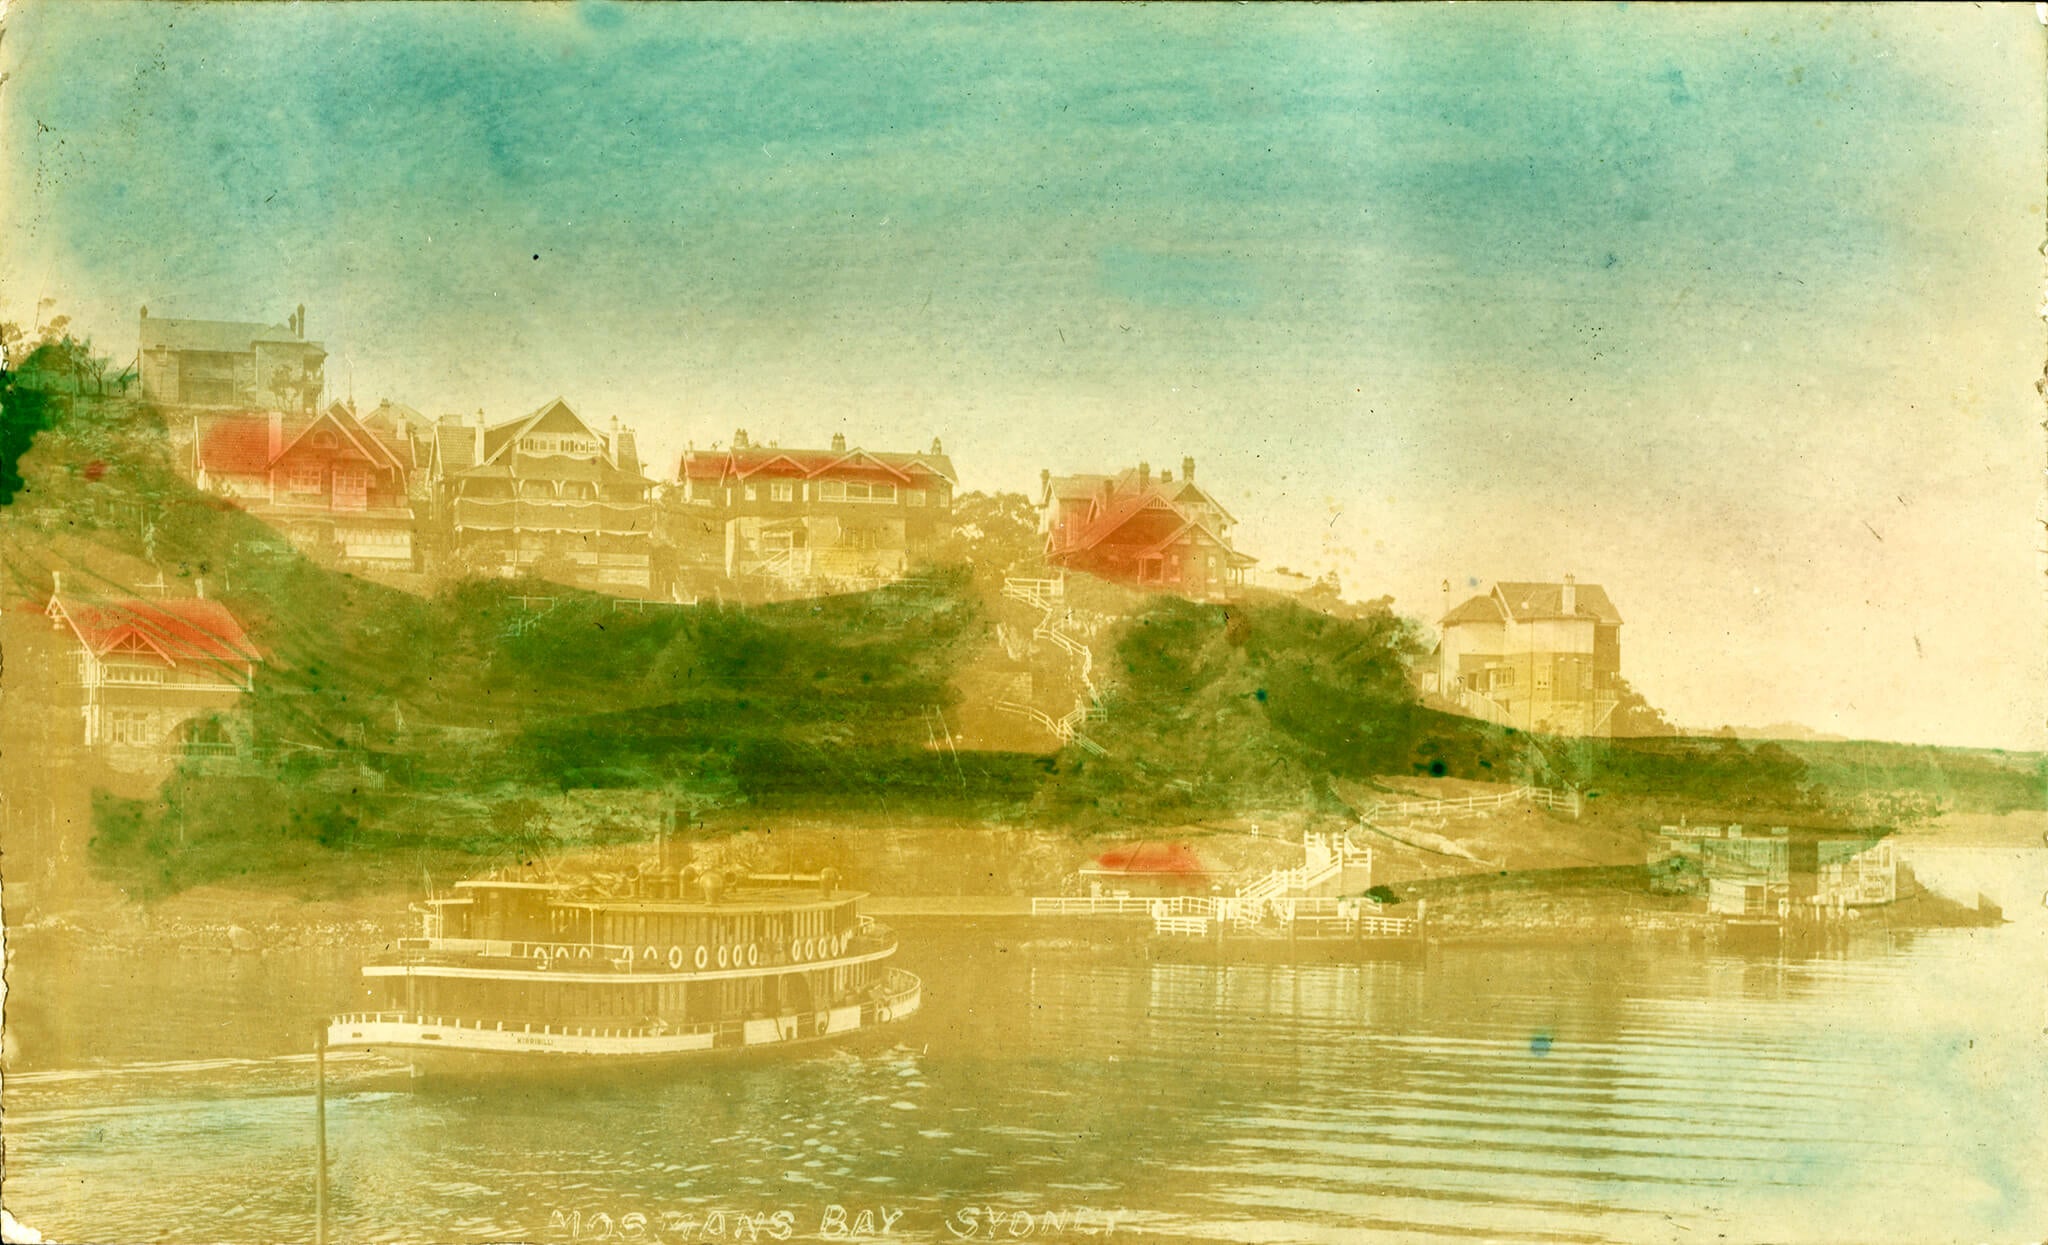 Postcard of Mosman Bay Villas